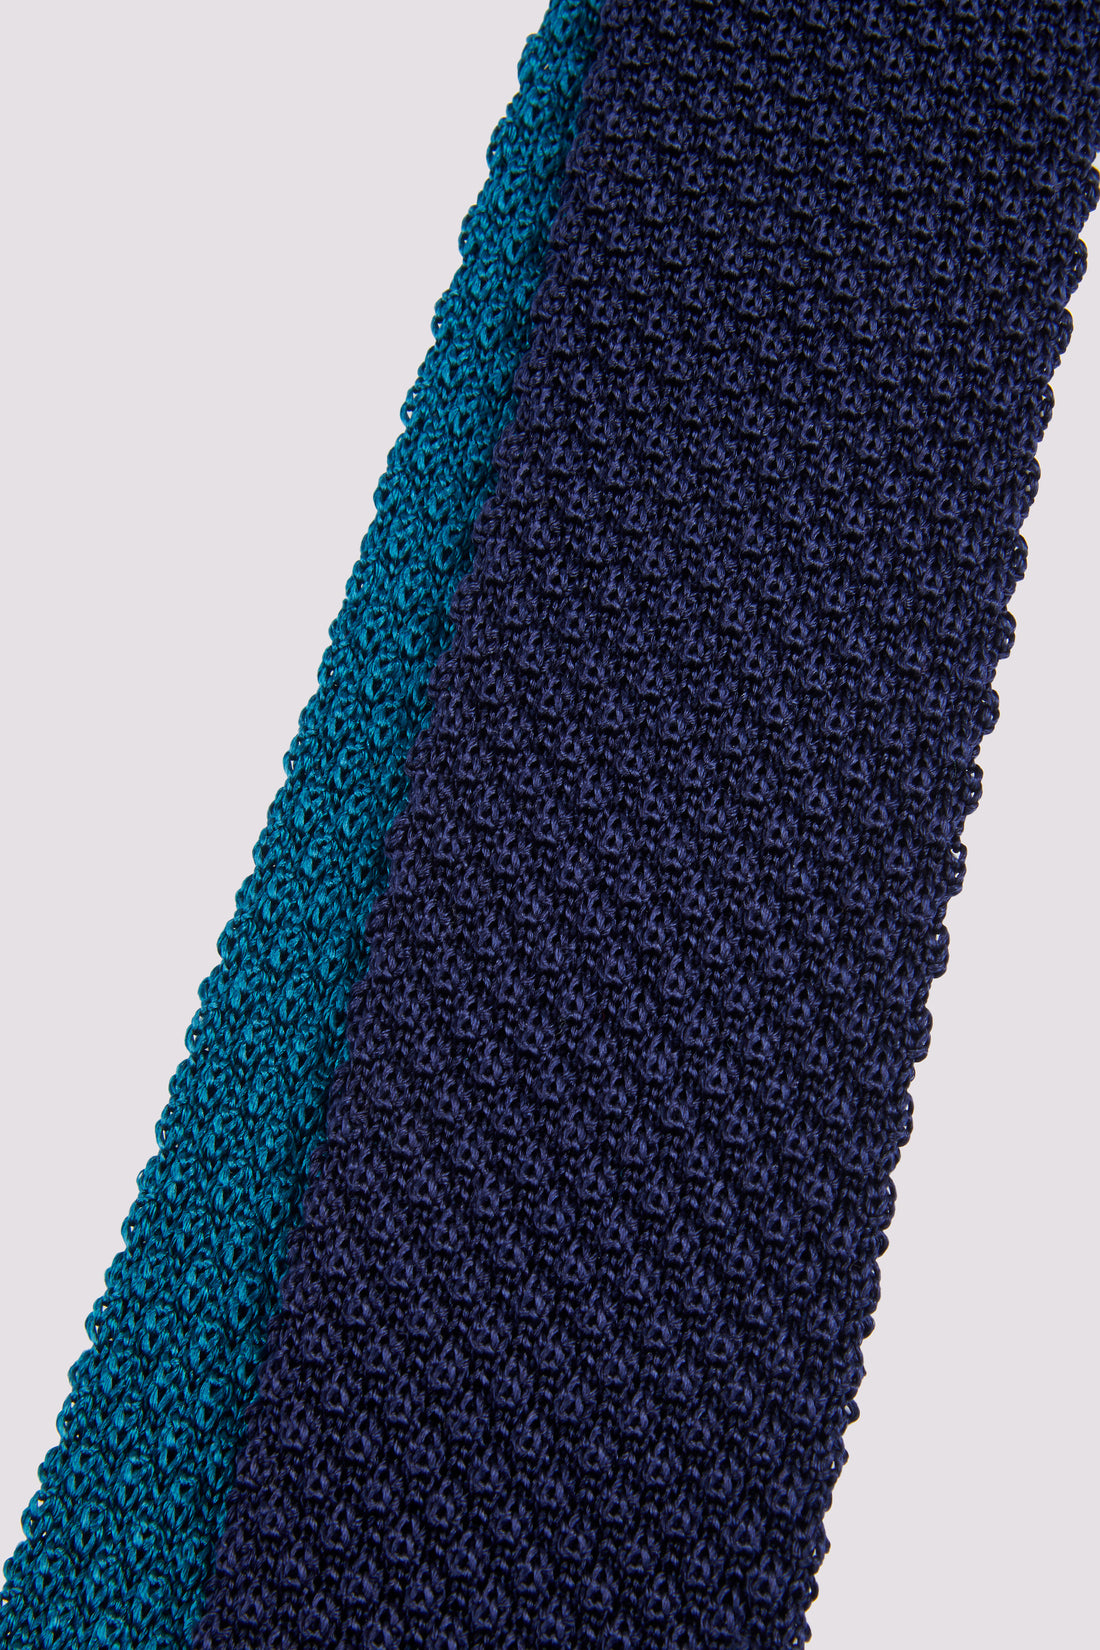 100% Silk Knitted Tie in Dark Navy